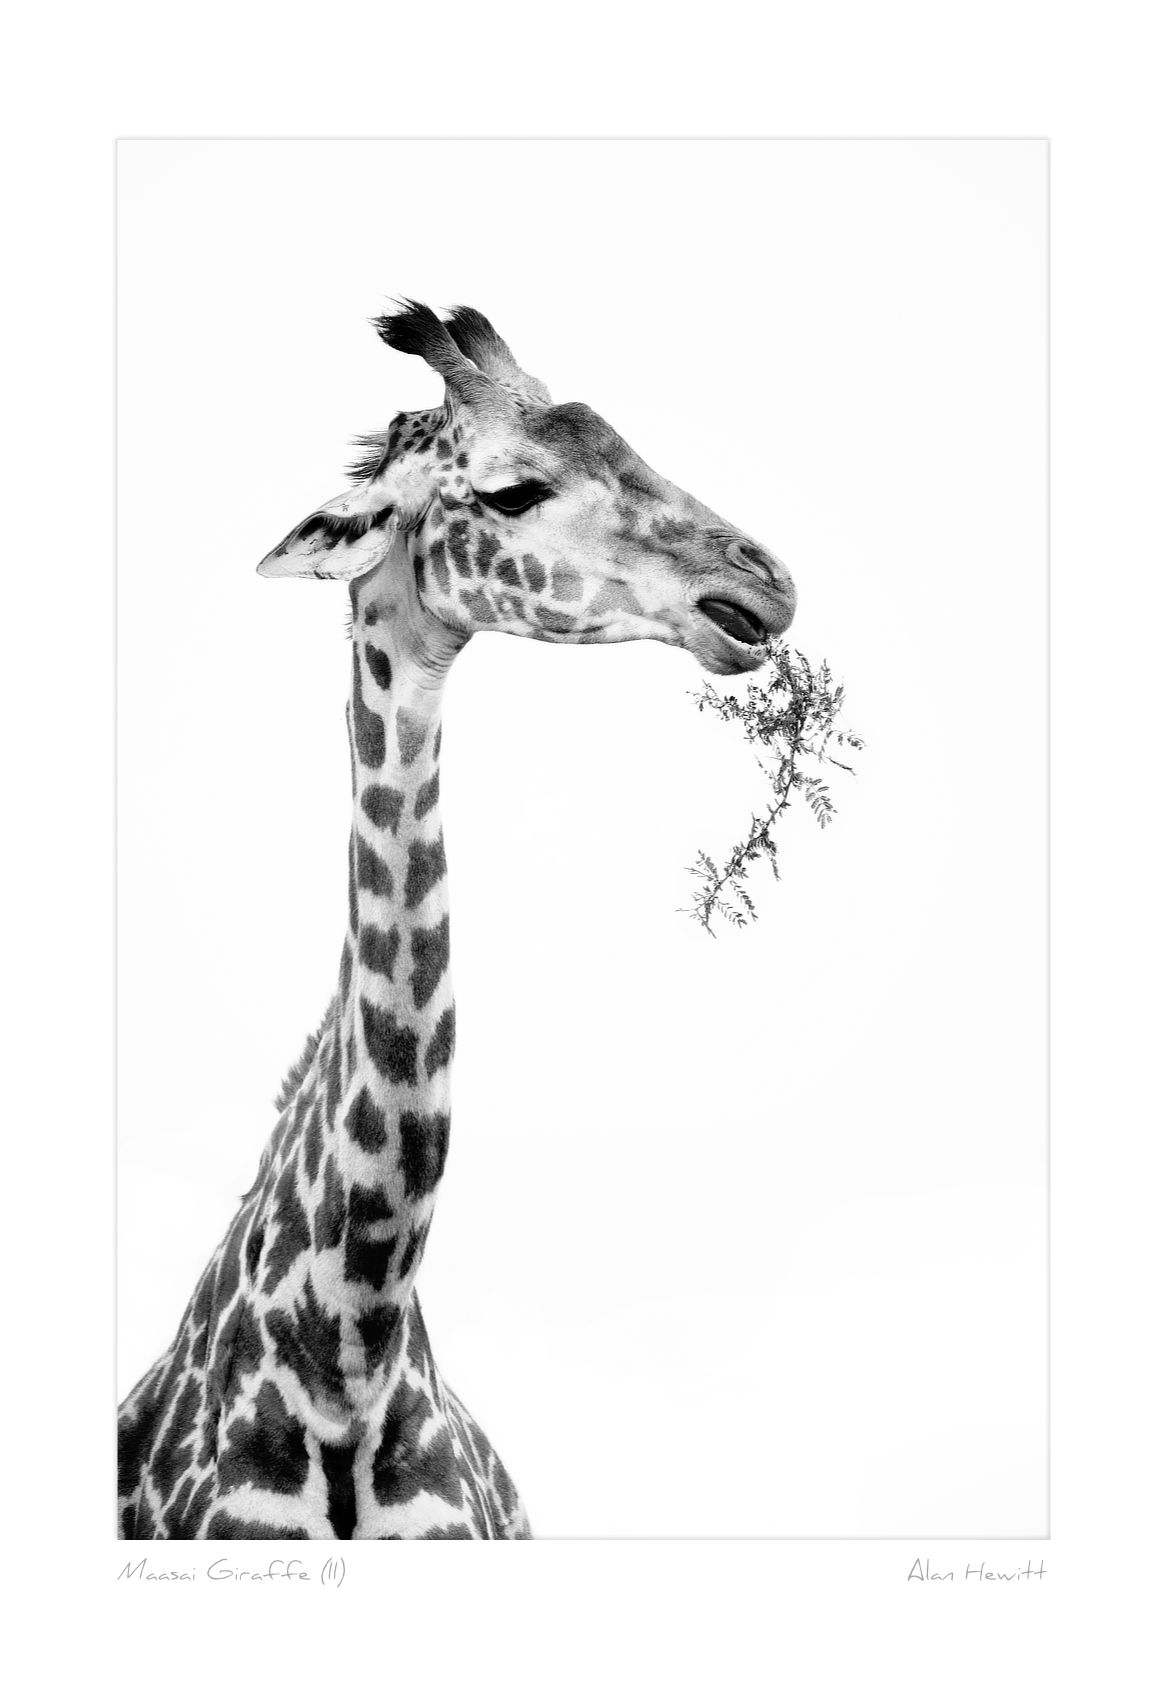 Maasai Giraffe (II)